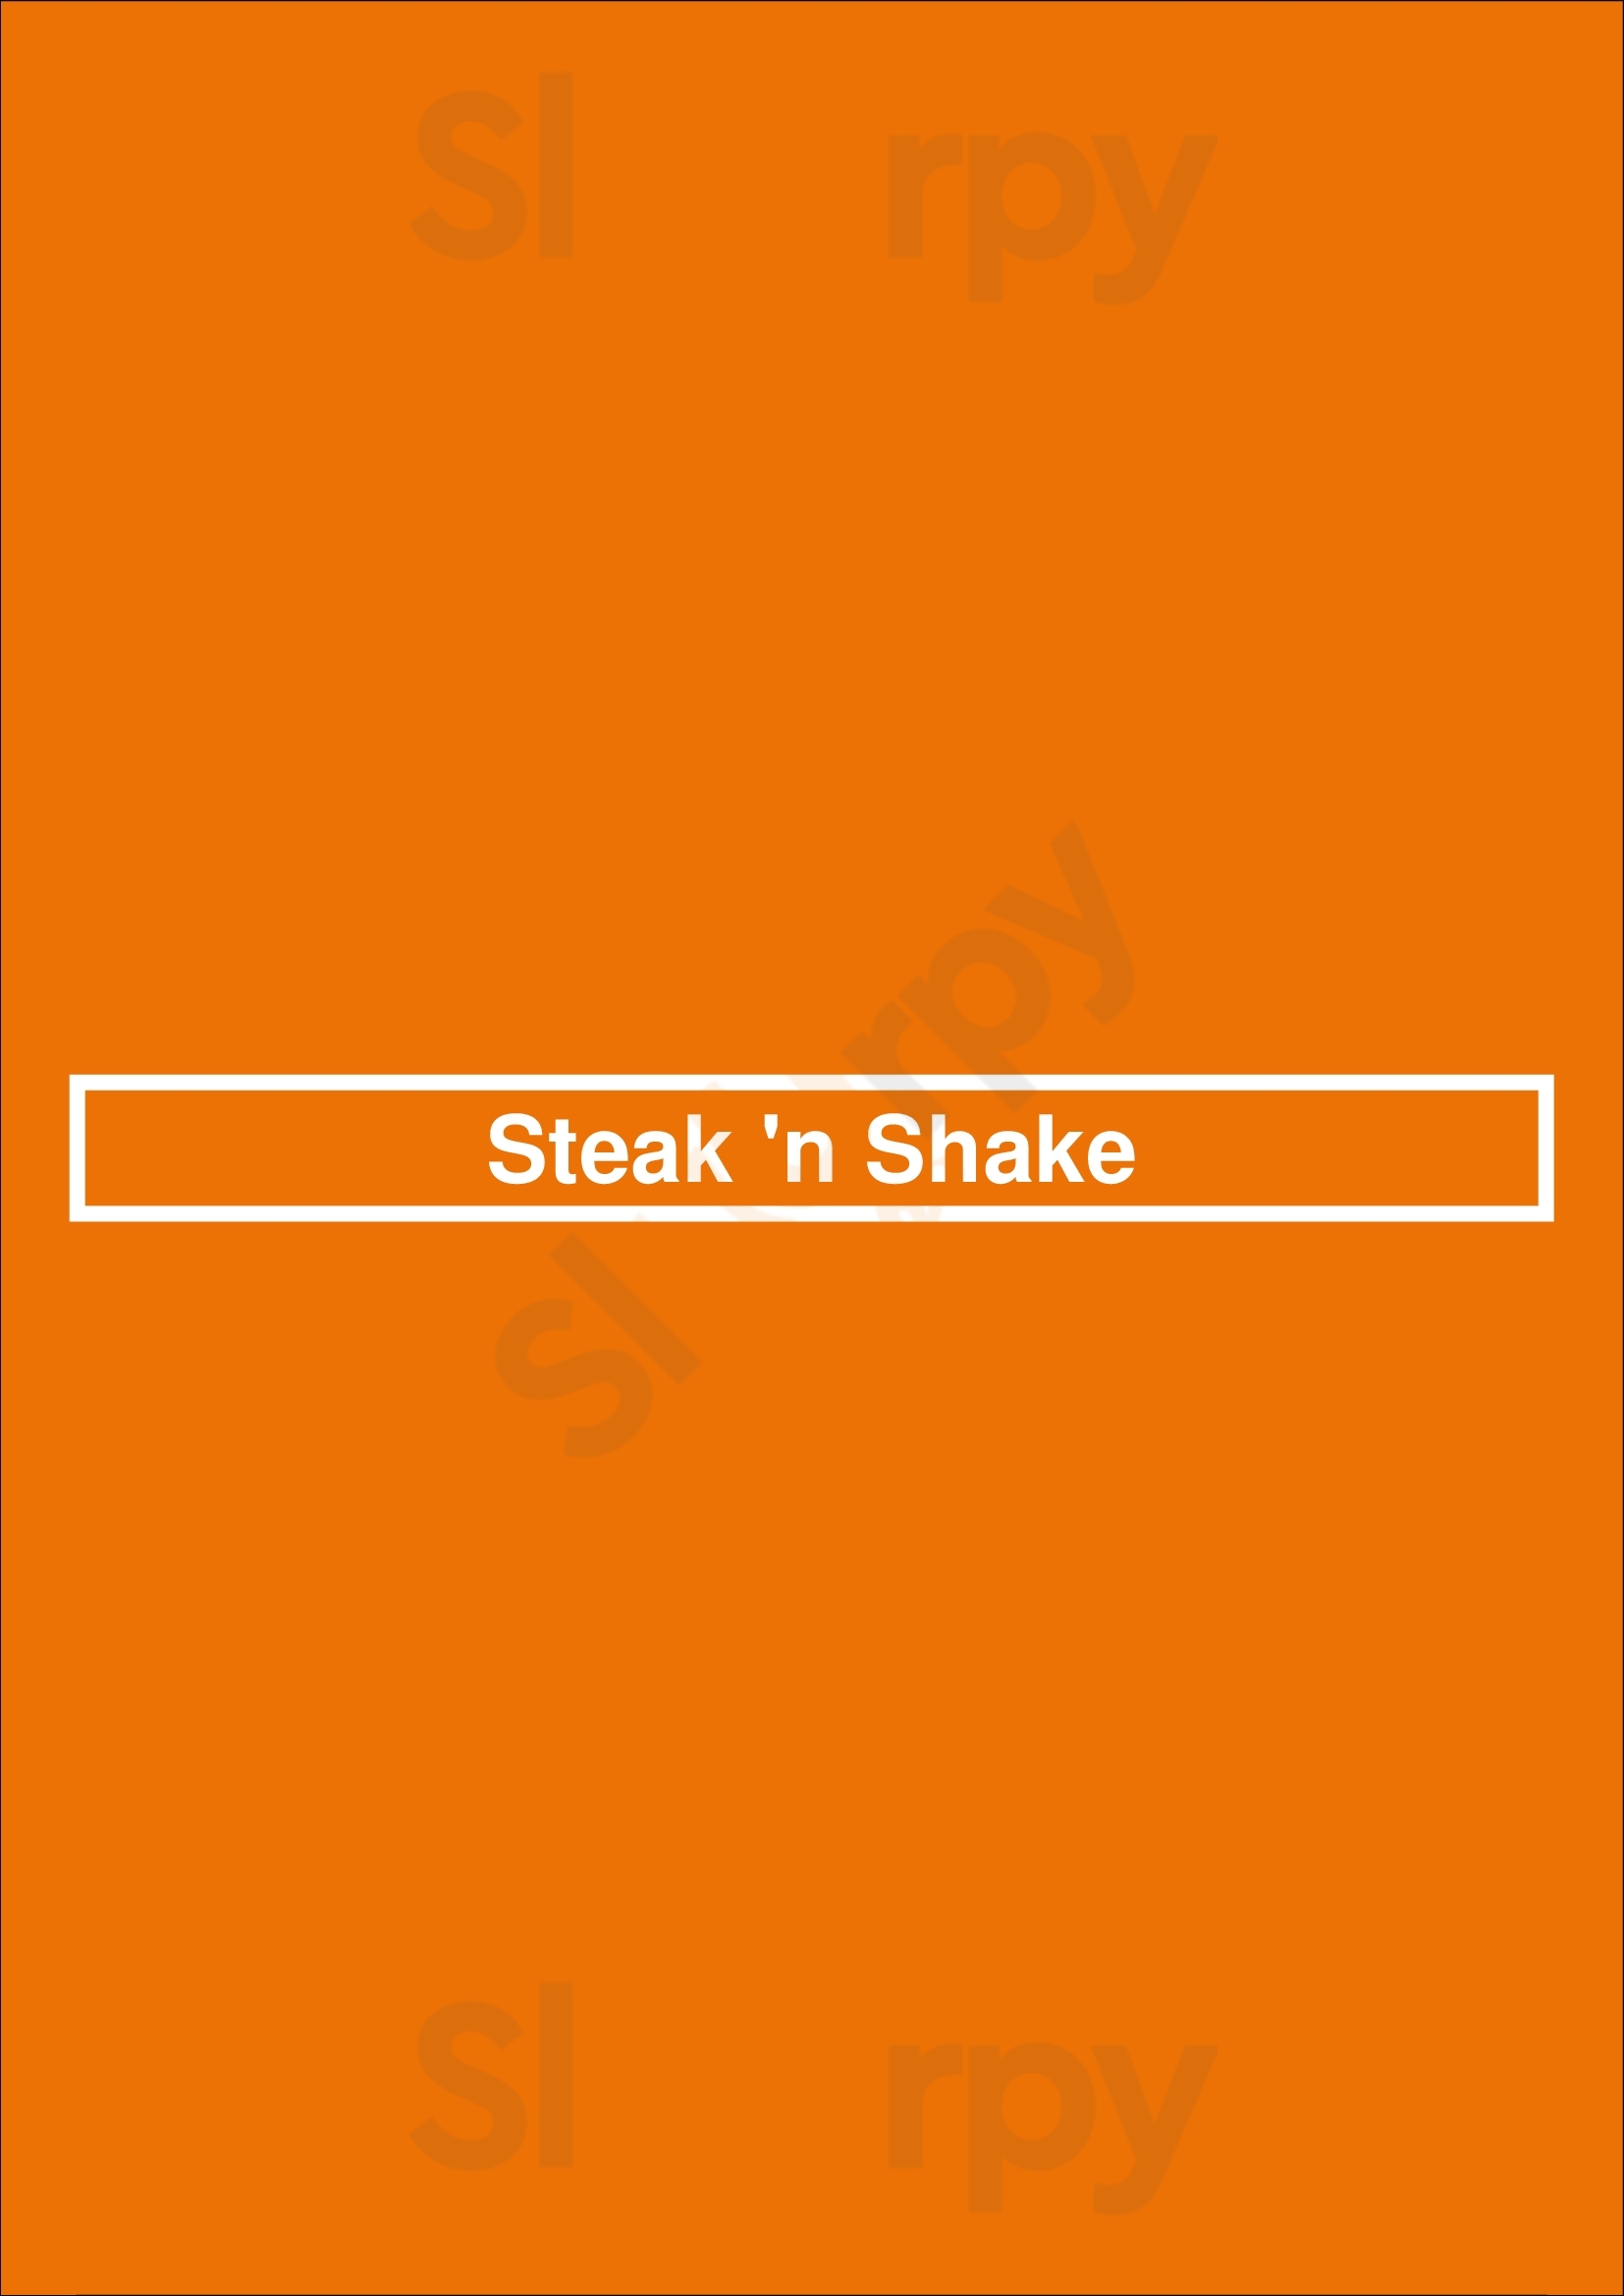 Steak 'n Shake Jackson Menu - 1